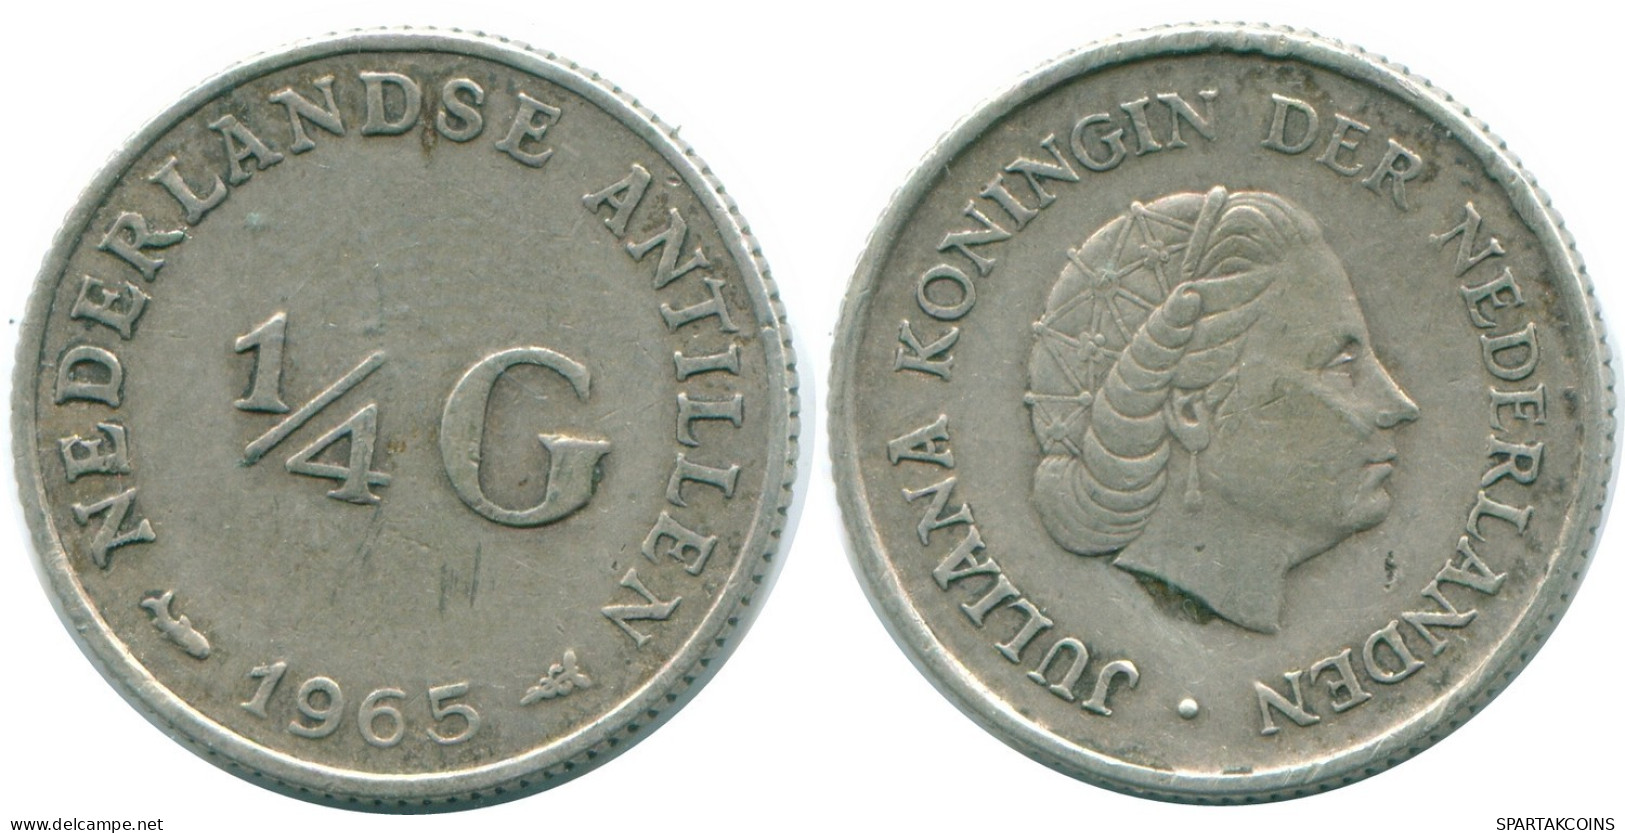 1/4 GULDEN 1965 NIEDERLÄNDISCHE ANTILLEN SILBER Koloniale Münze #NL11352.4.D.A - Niederländische Antillen